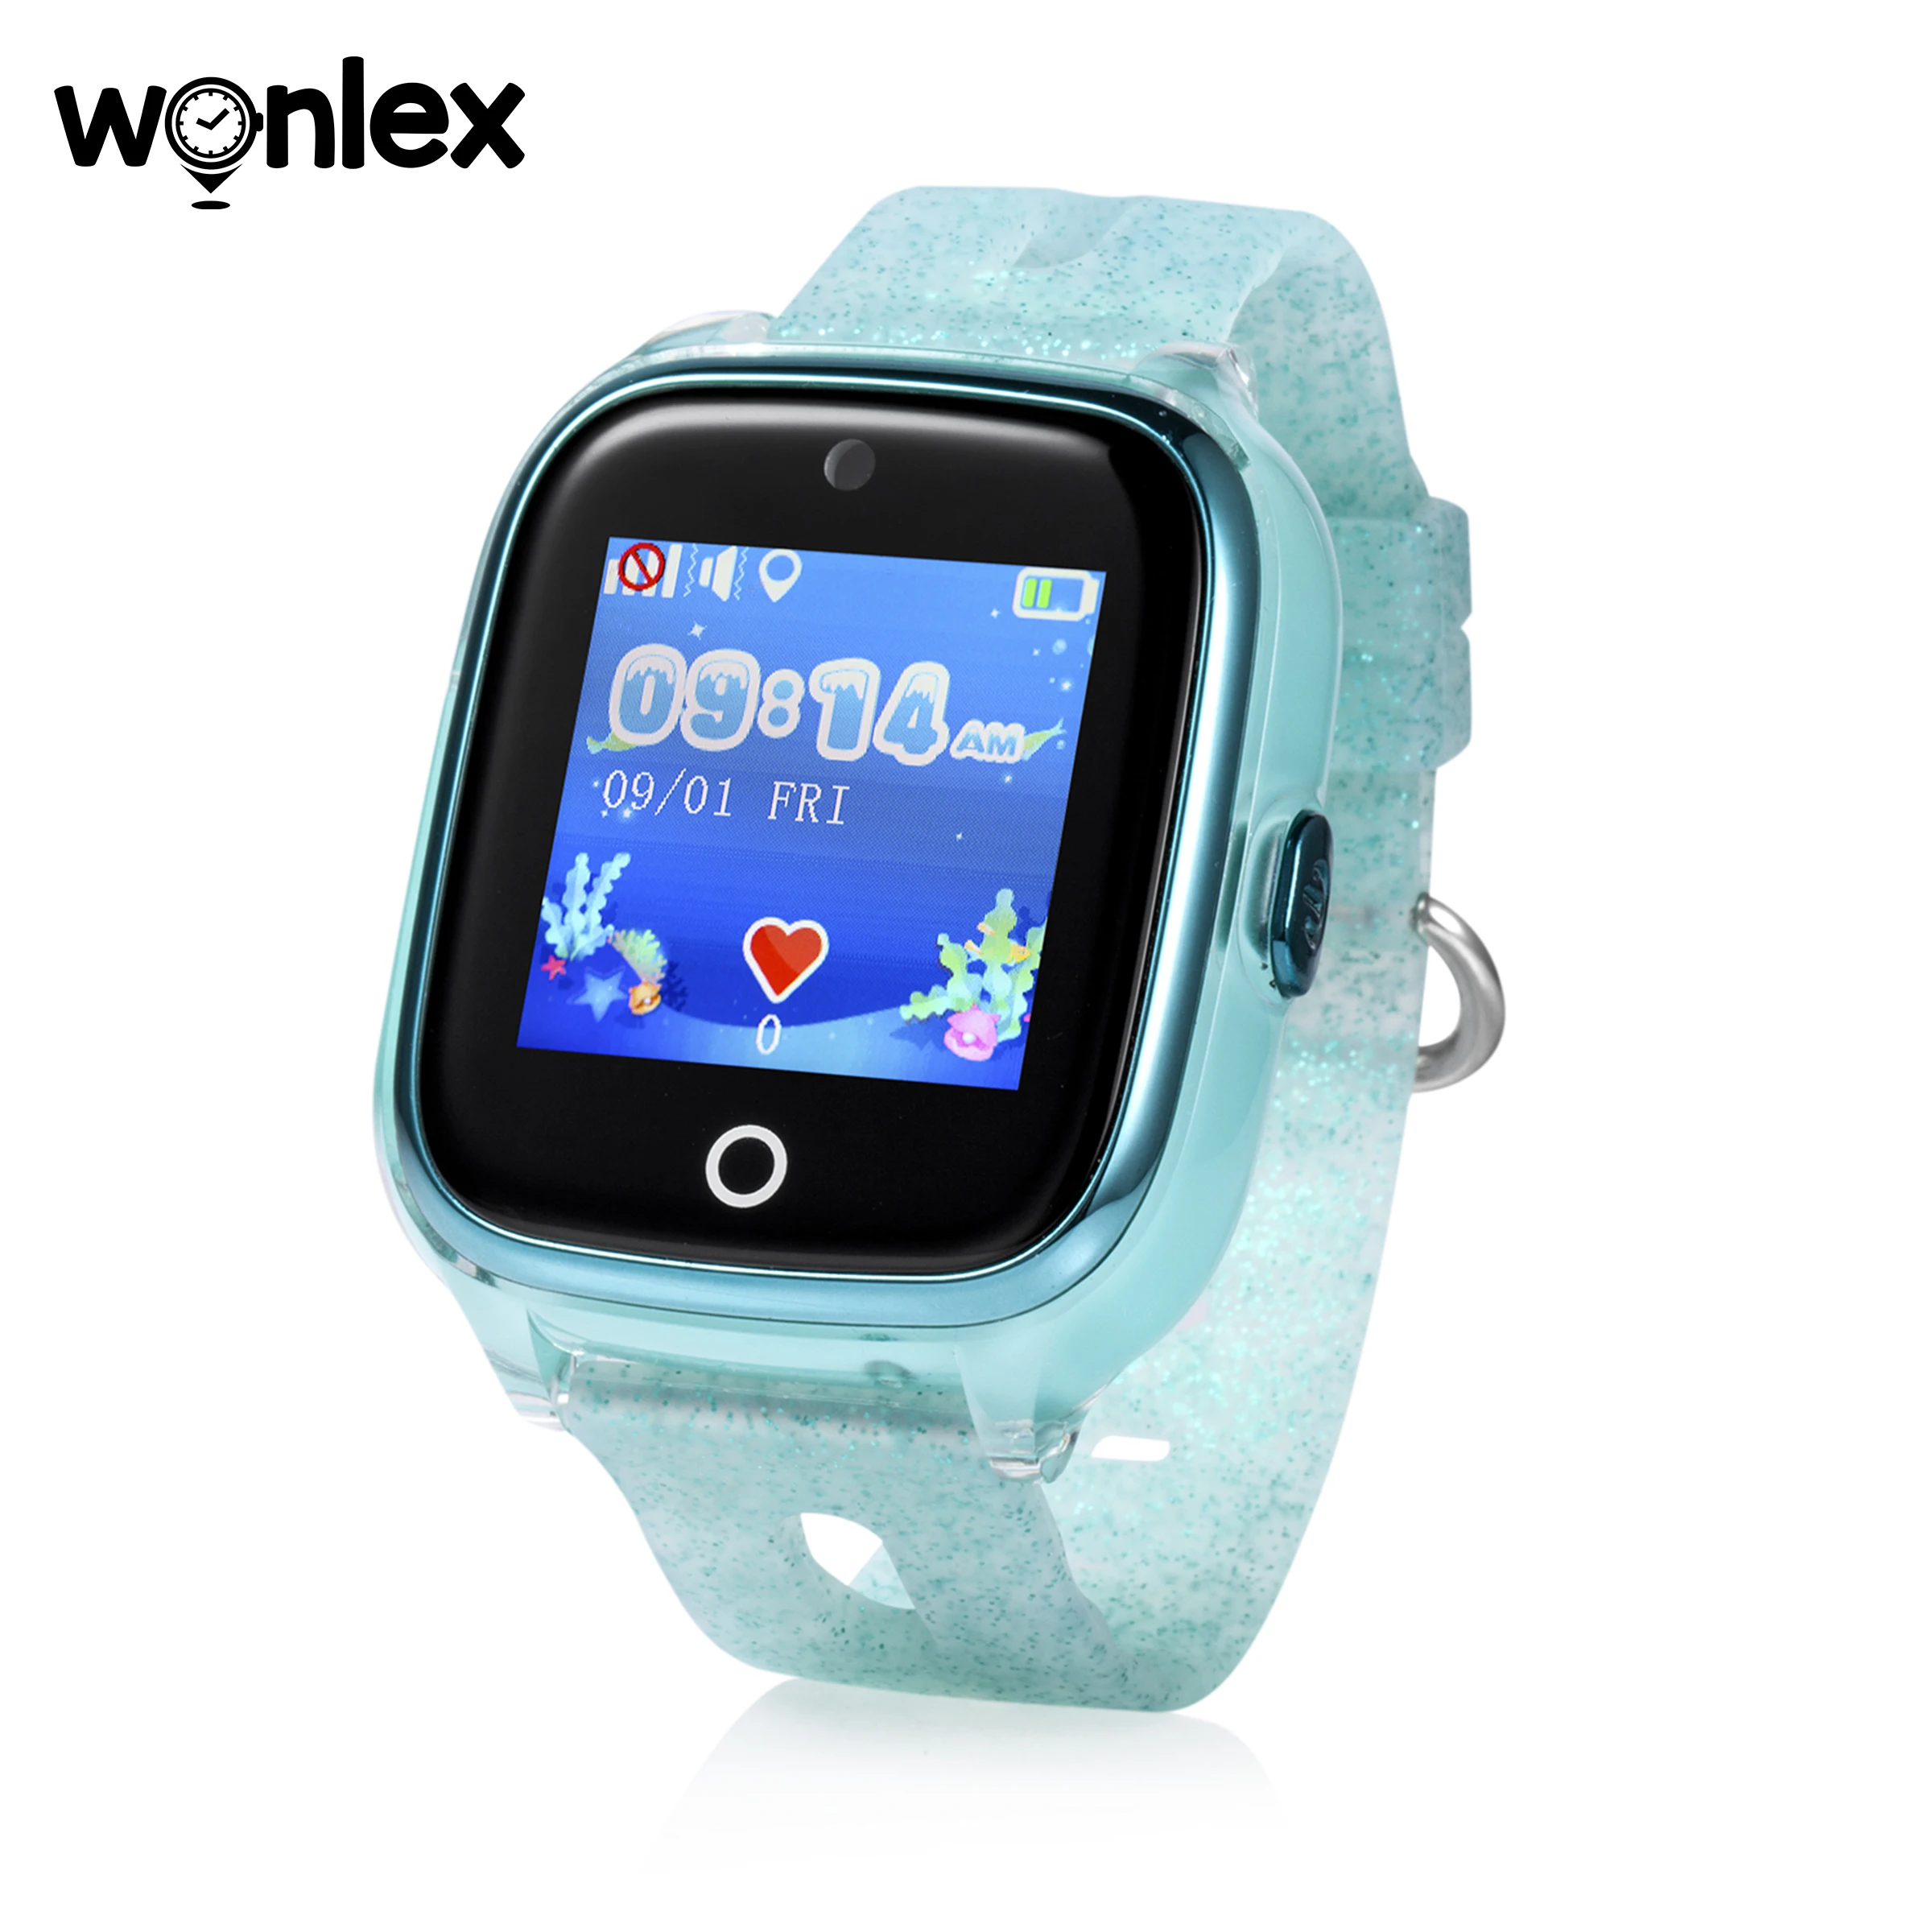 

Смарт-часы Wonlex детский gps-трекер Wi-Fi Водонепроницаемая камера IP67 часы 2G KT01 SIM-карта SOS помощь телефонный звонок ребенок LBS часы подарок